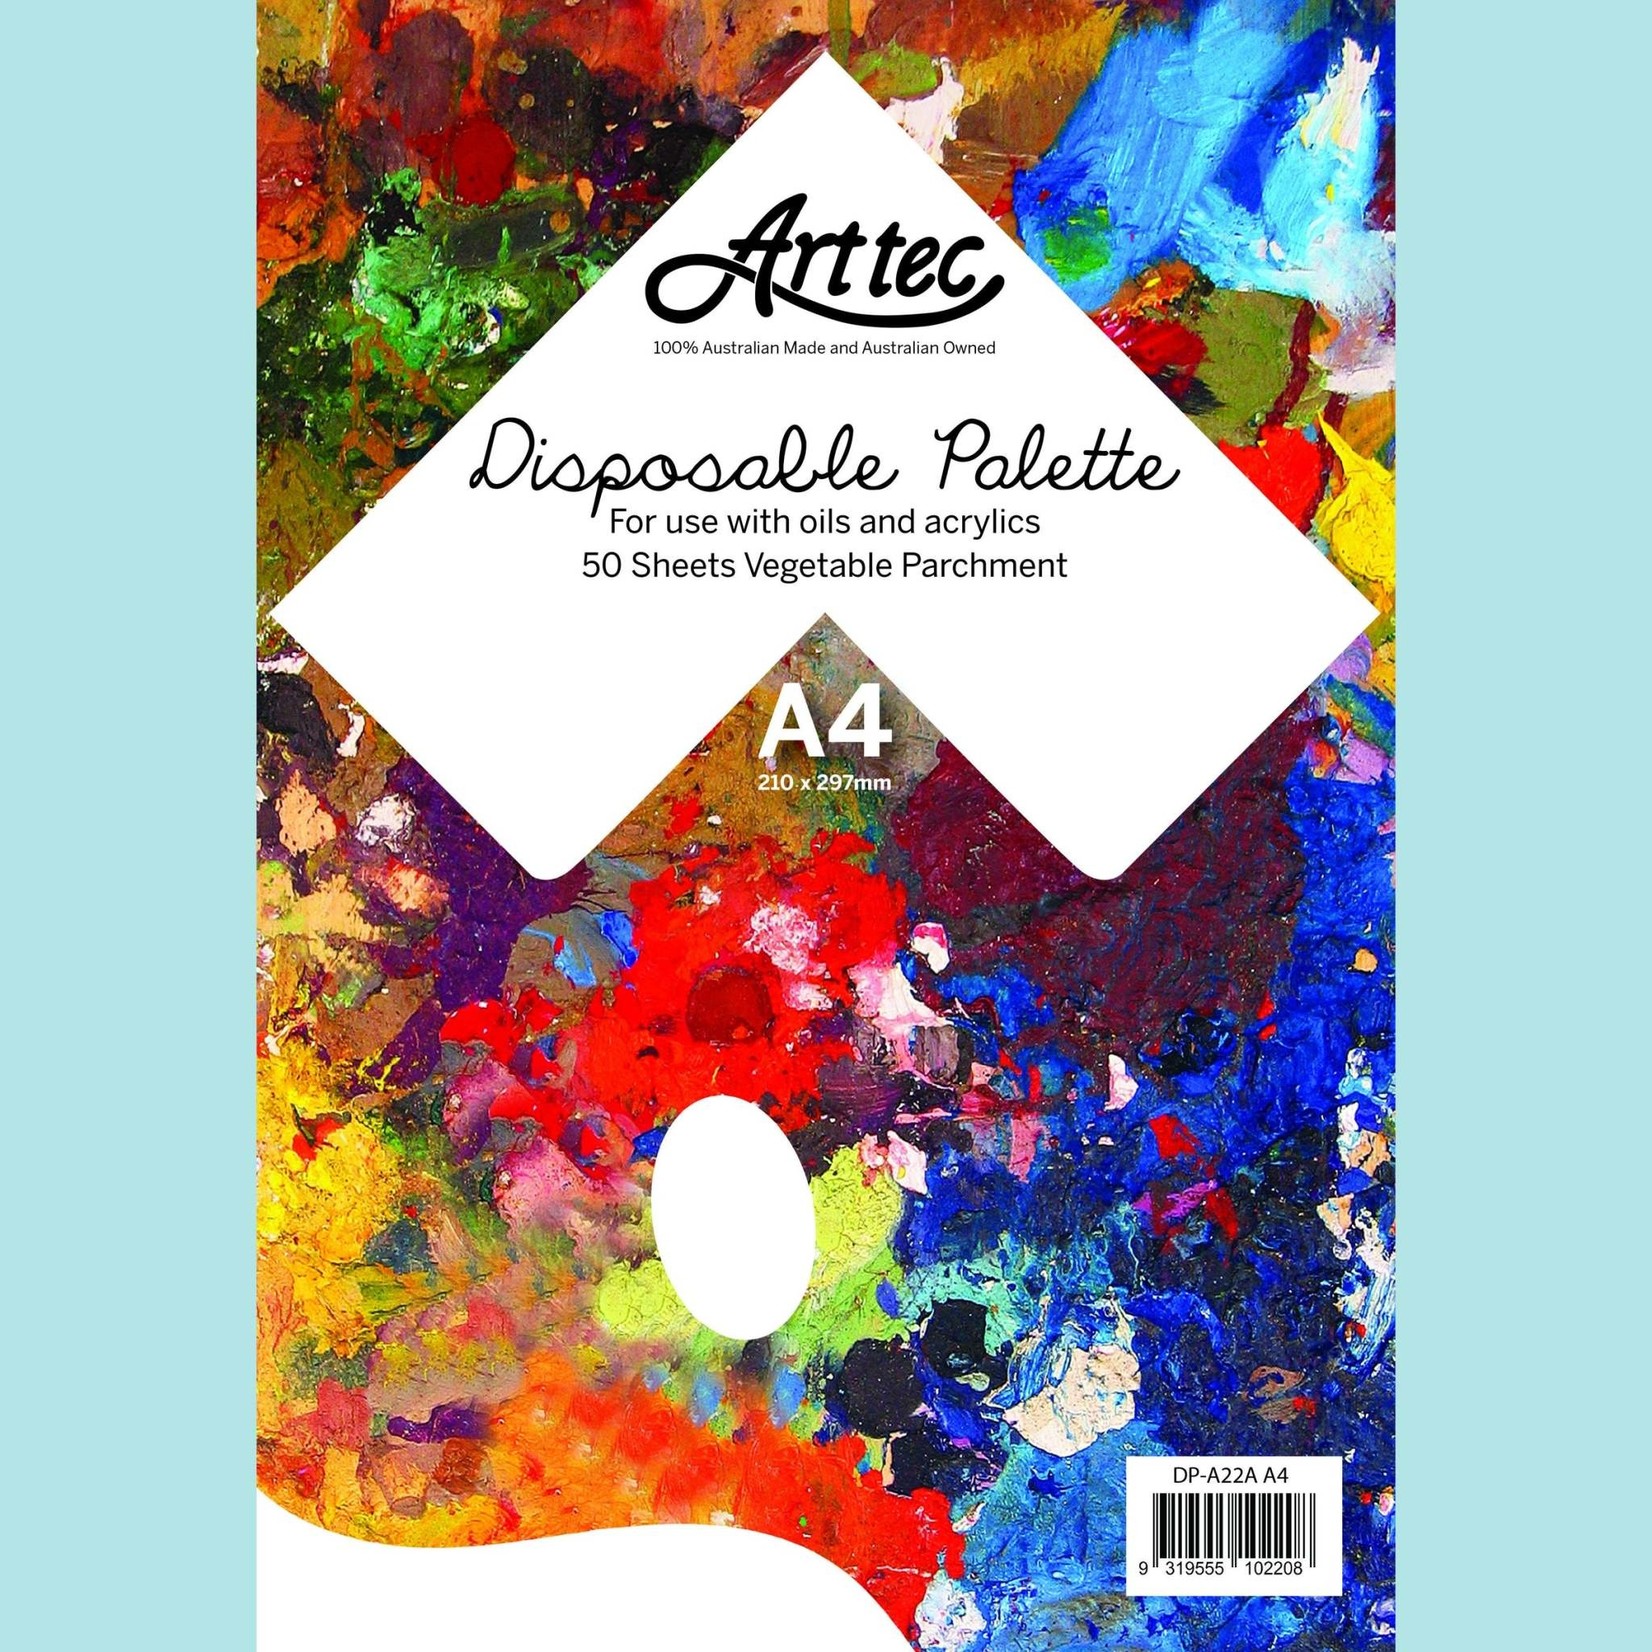 ArtTec ARTTEC DISPOSABLE PALETTE A4